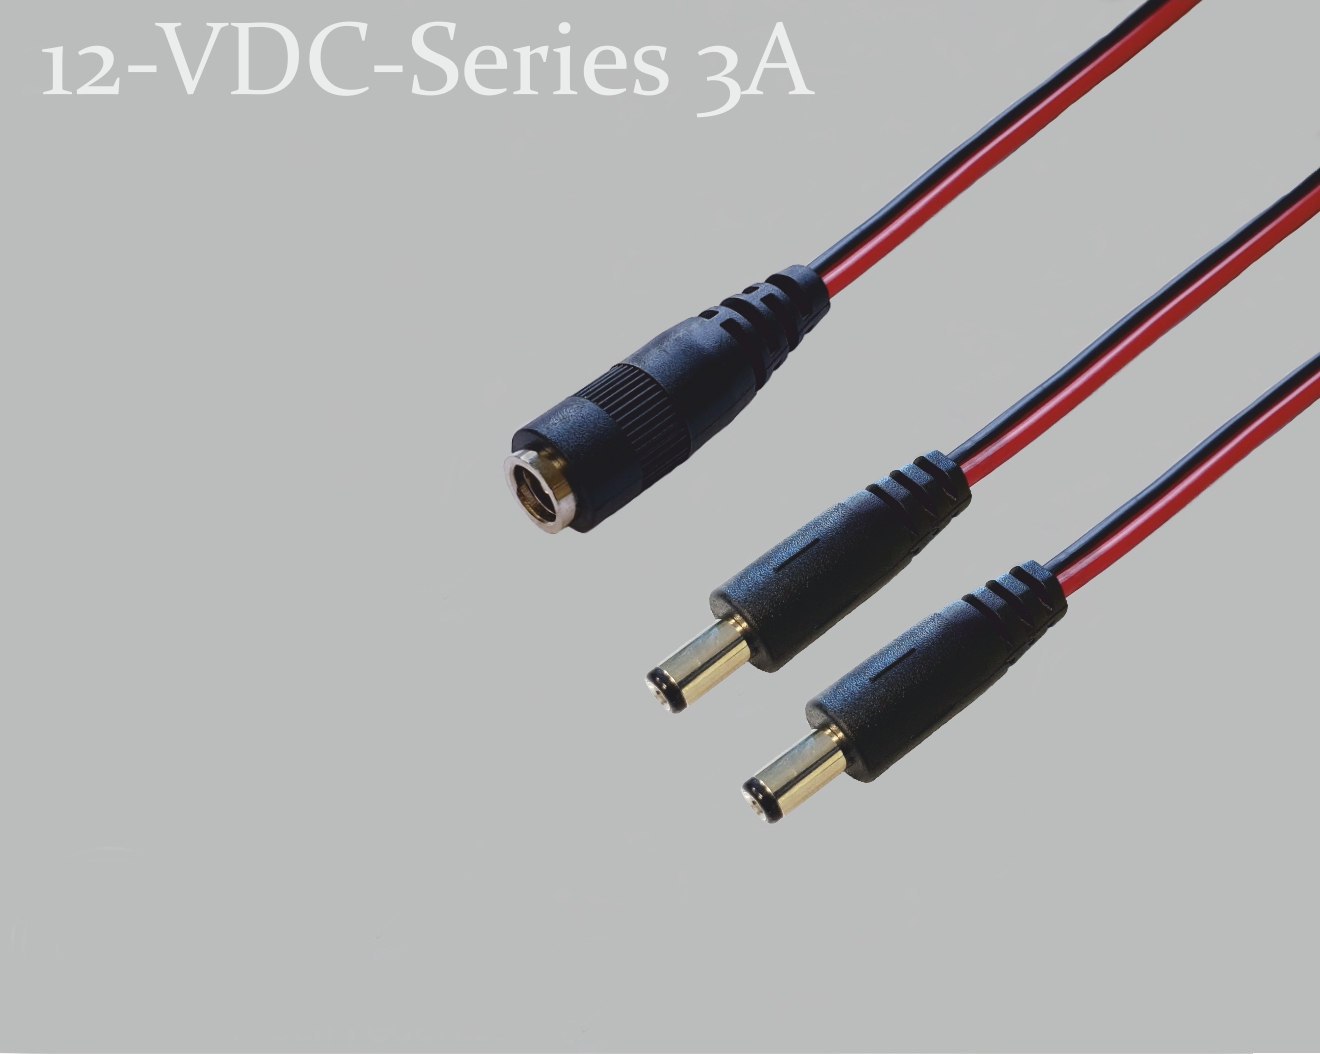 12-VDC-Series 3A, DC-Verteiler 1x DC-Kupplung auf 2x DC-Stecker mit Federkontakt,  2,1x5,5mm, Flachkabel 2x0,4mm², rot/schwarz, 0,3m